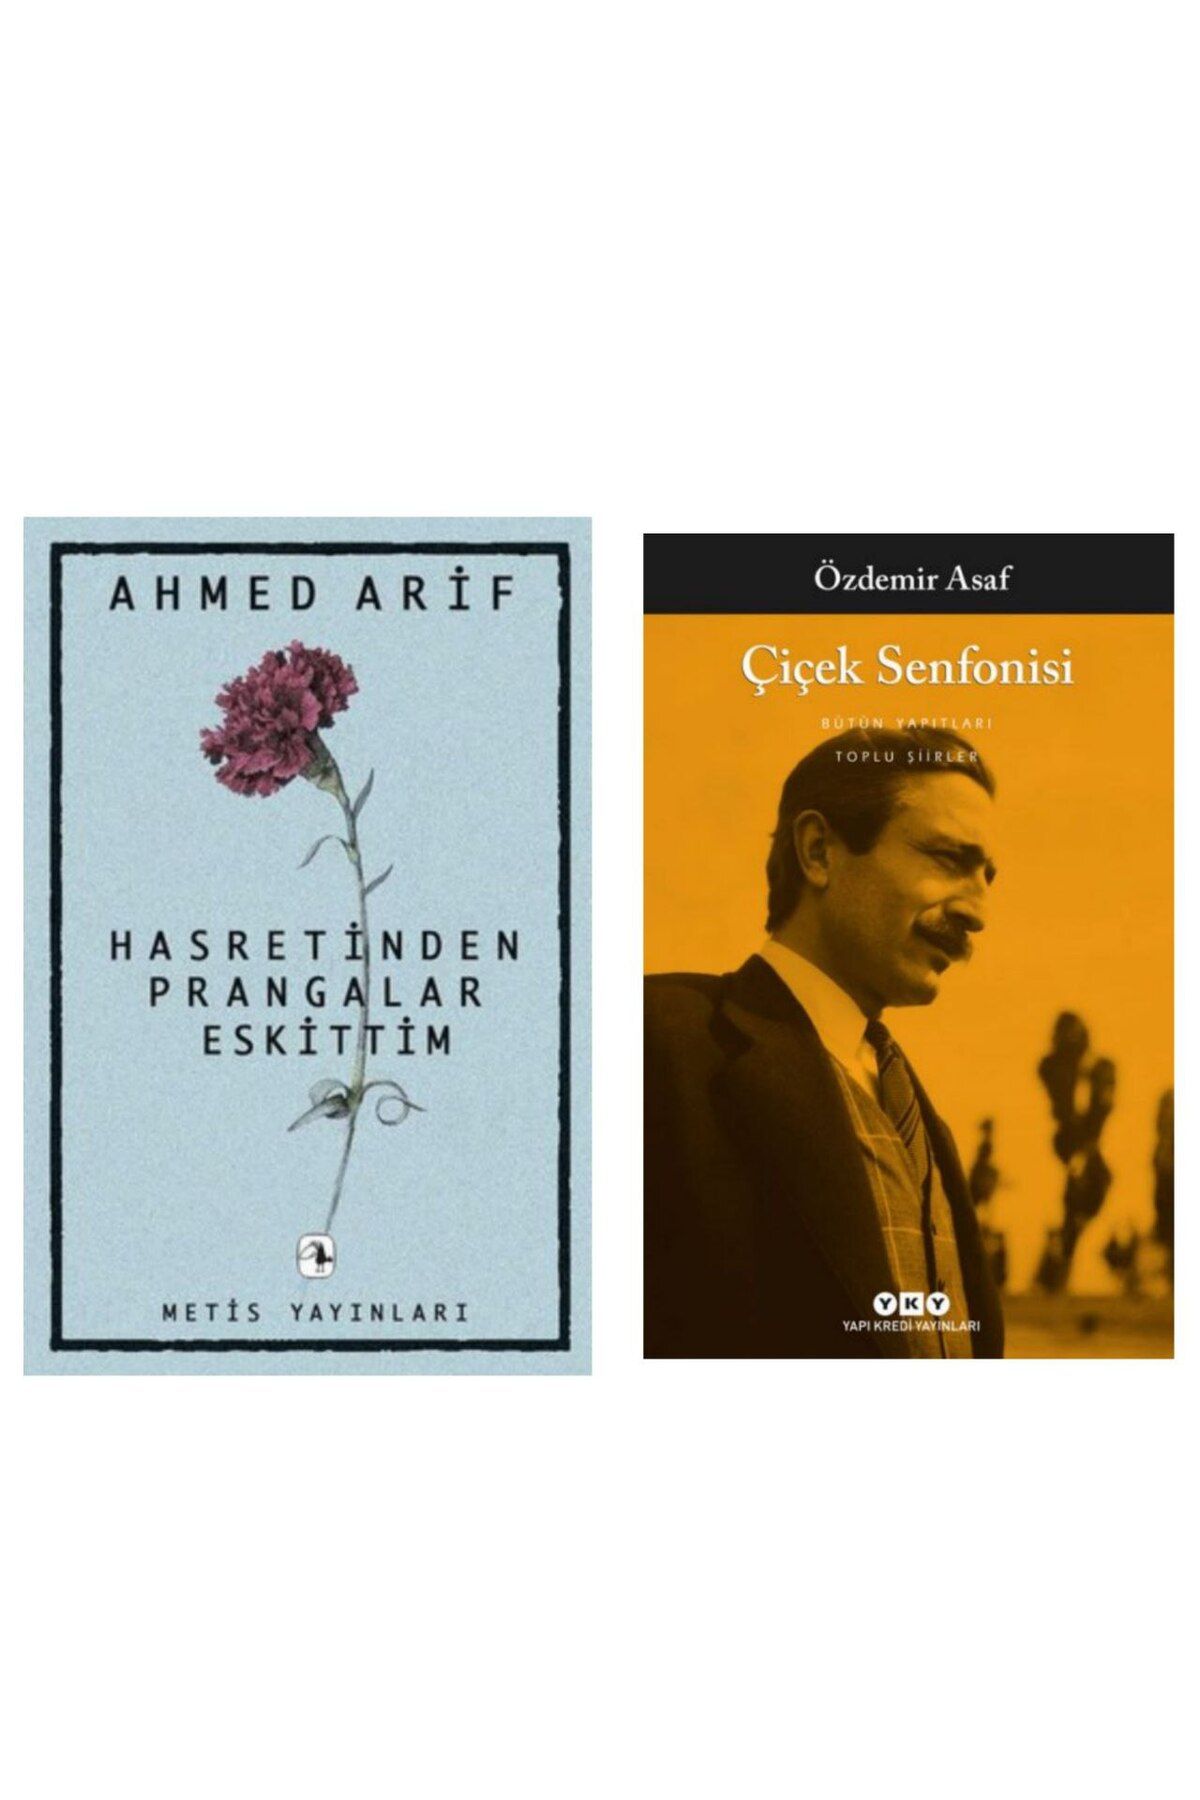 Metis Yayıncılık Hasretinden Prangalar Eskittim - Ahmed Arif - Çiçek Senfonisi - Özdemir Asaf